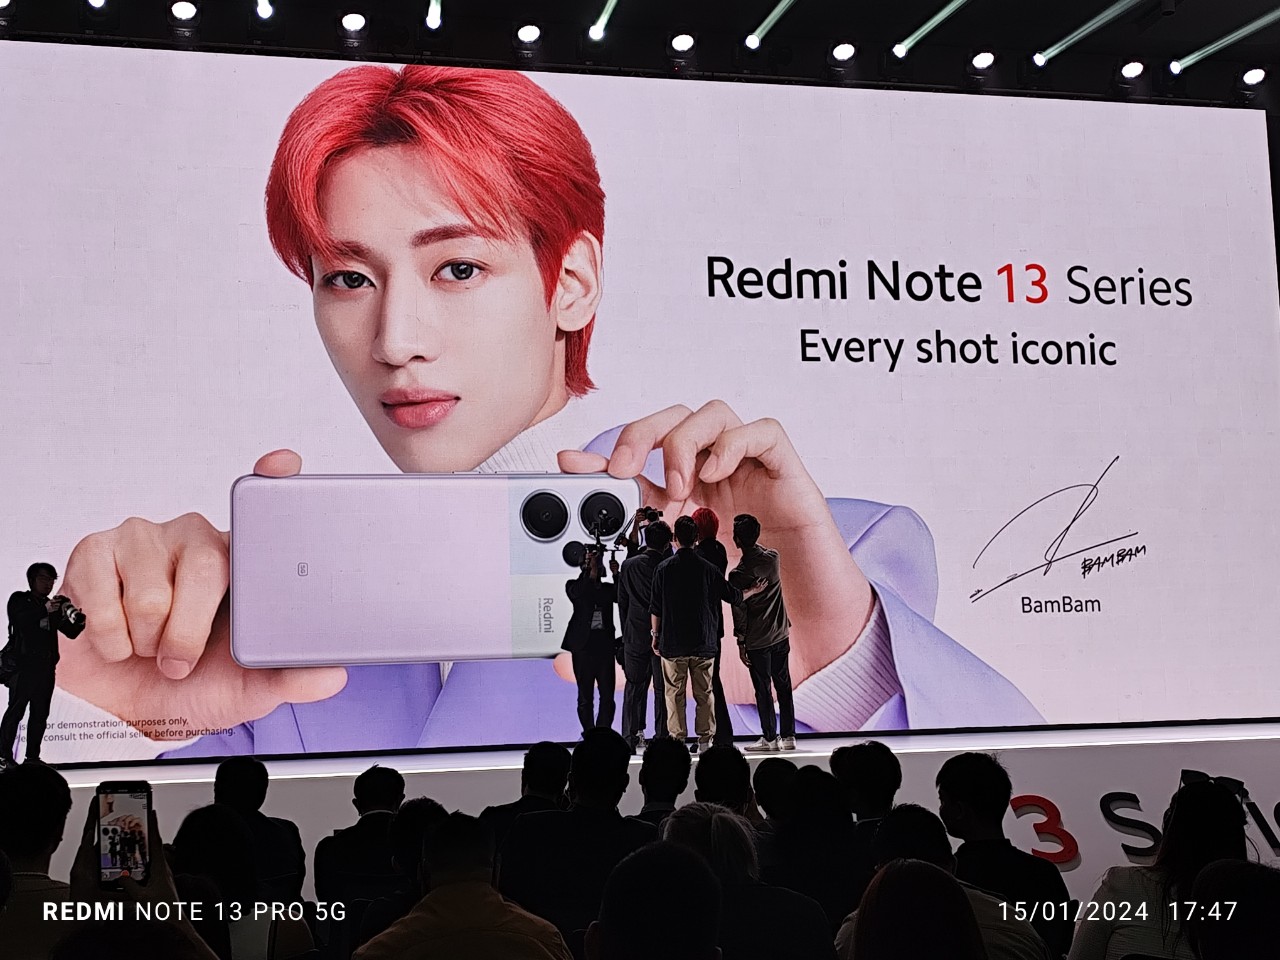 Ra mắt Redmi Note 13 series: Thiết kế đẹp, hiệu suất mạnh của mỗi phân khúc - z5080330417540 b40409b4229be8cd86918ef24dd97ae6 1